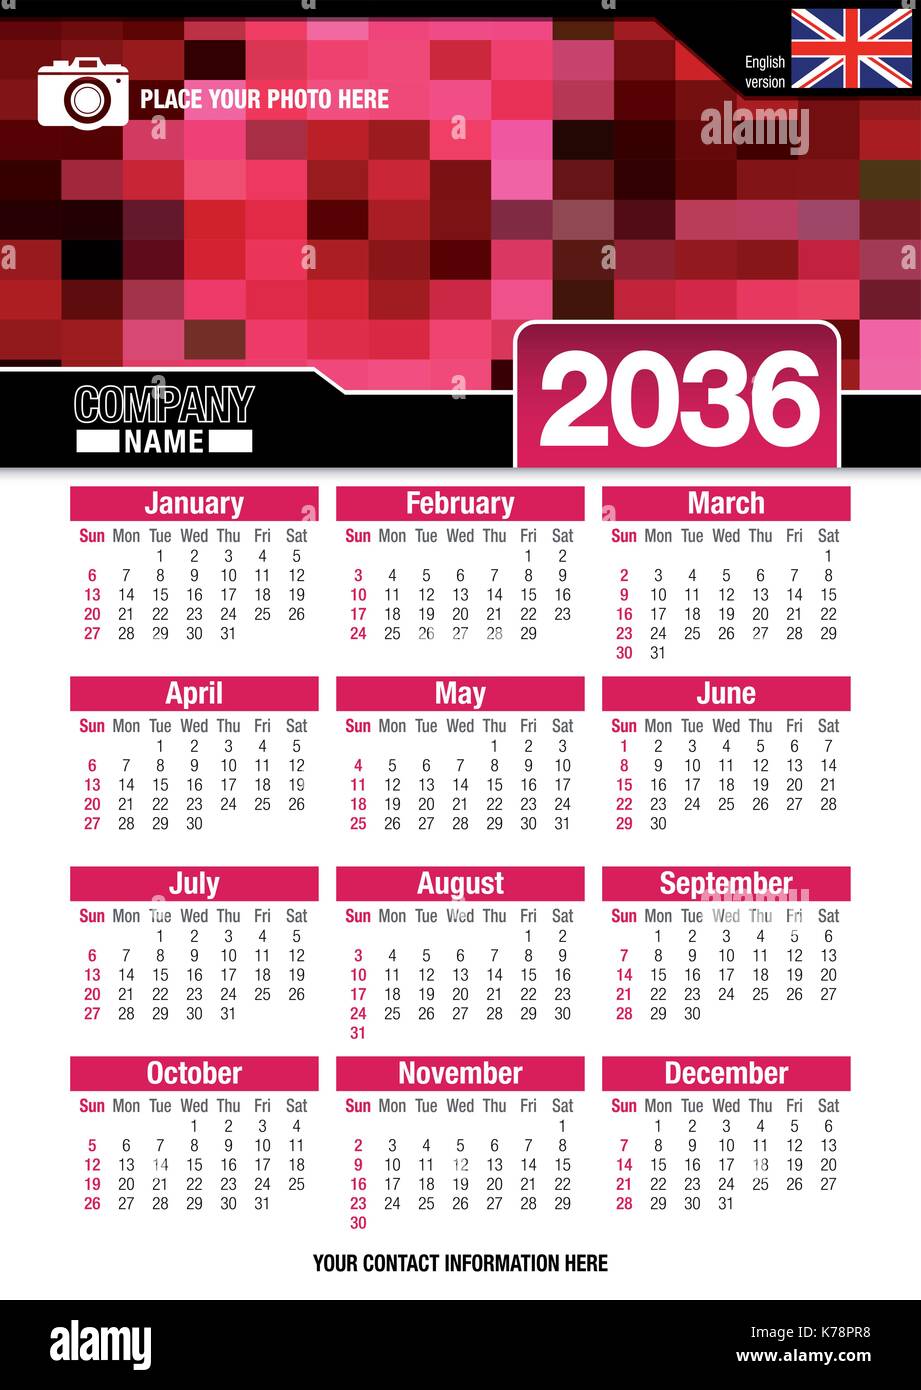 Utile calendario da parete 2036 con design di colori rosso mosaico. Formato A4 verticale. Dimensioni: 210mm x 297mm. Versione Inglese - immagine vettoriale Illustrazione Vettoriale